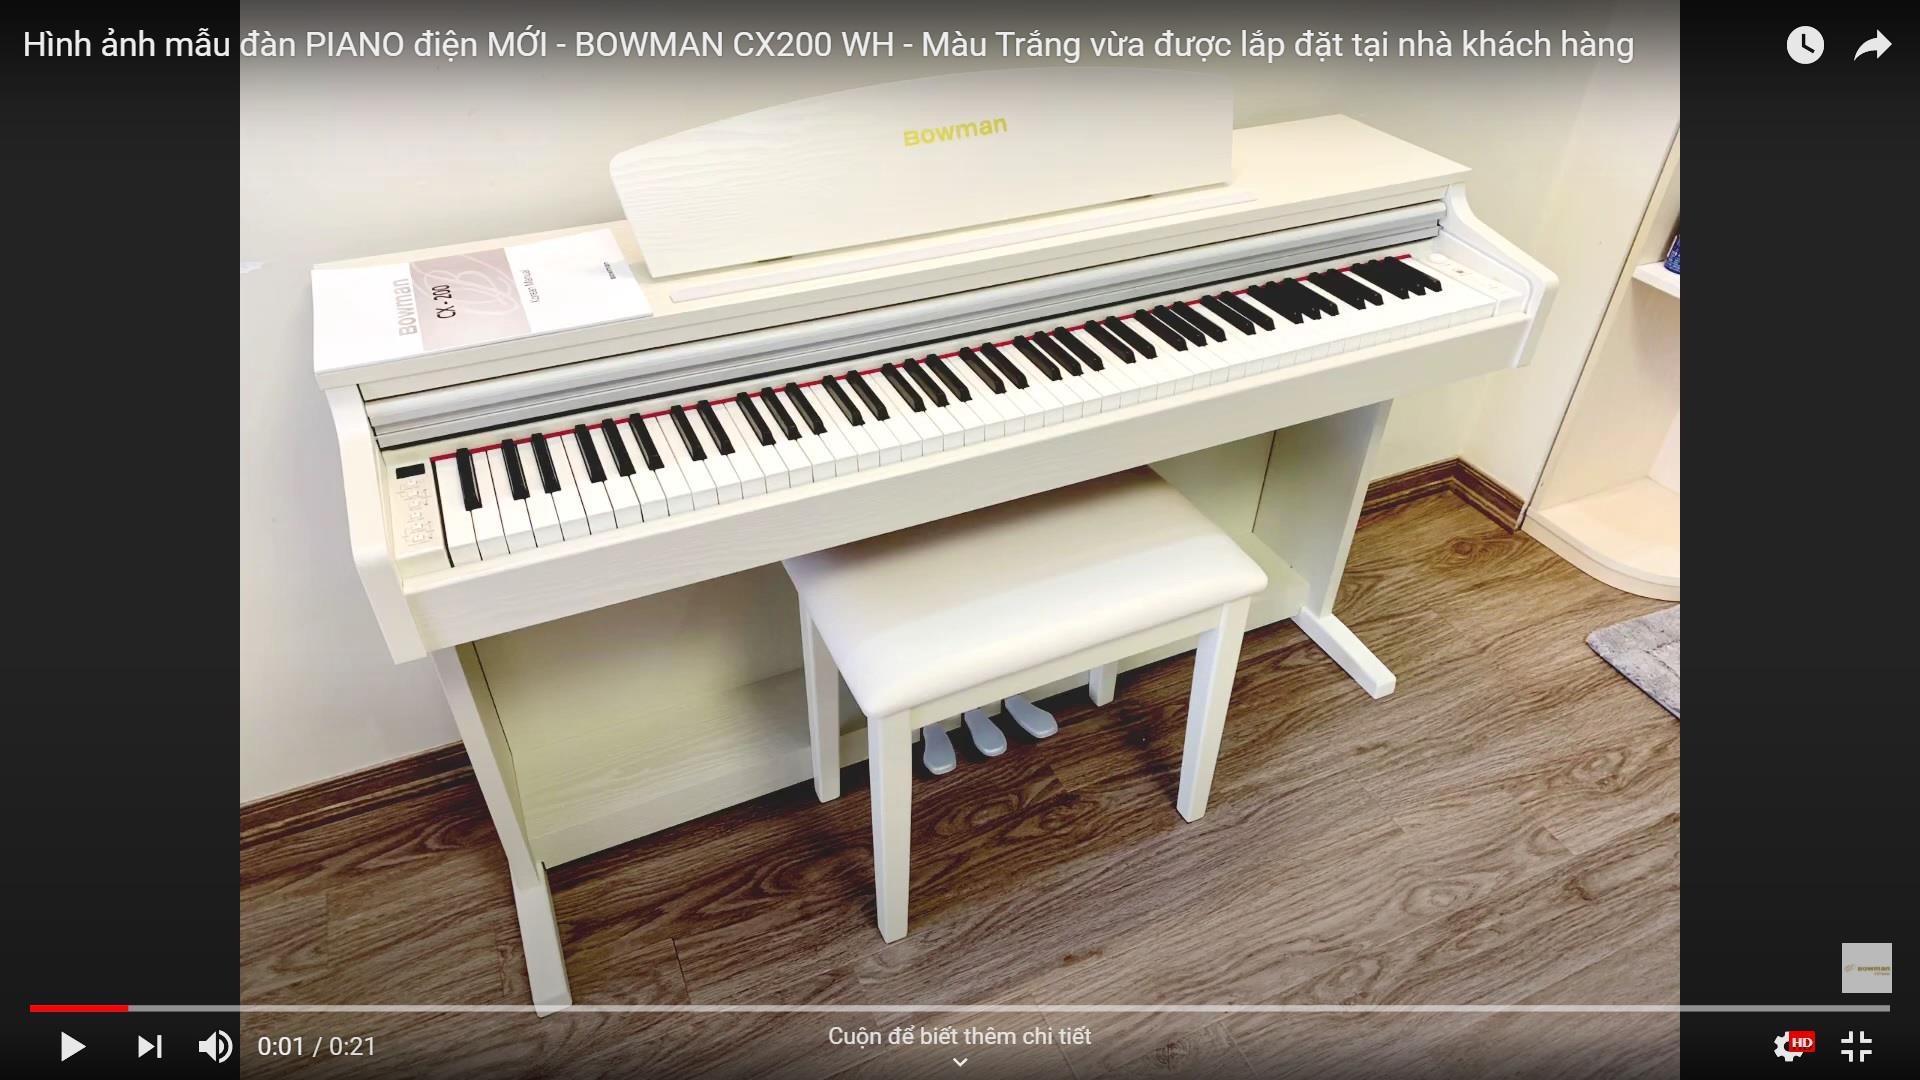 Hình ảnh sản phẩm PIANO điện MỚI - BOWMAN CX200 WH - Màu Trắng tuyệt đẹp